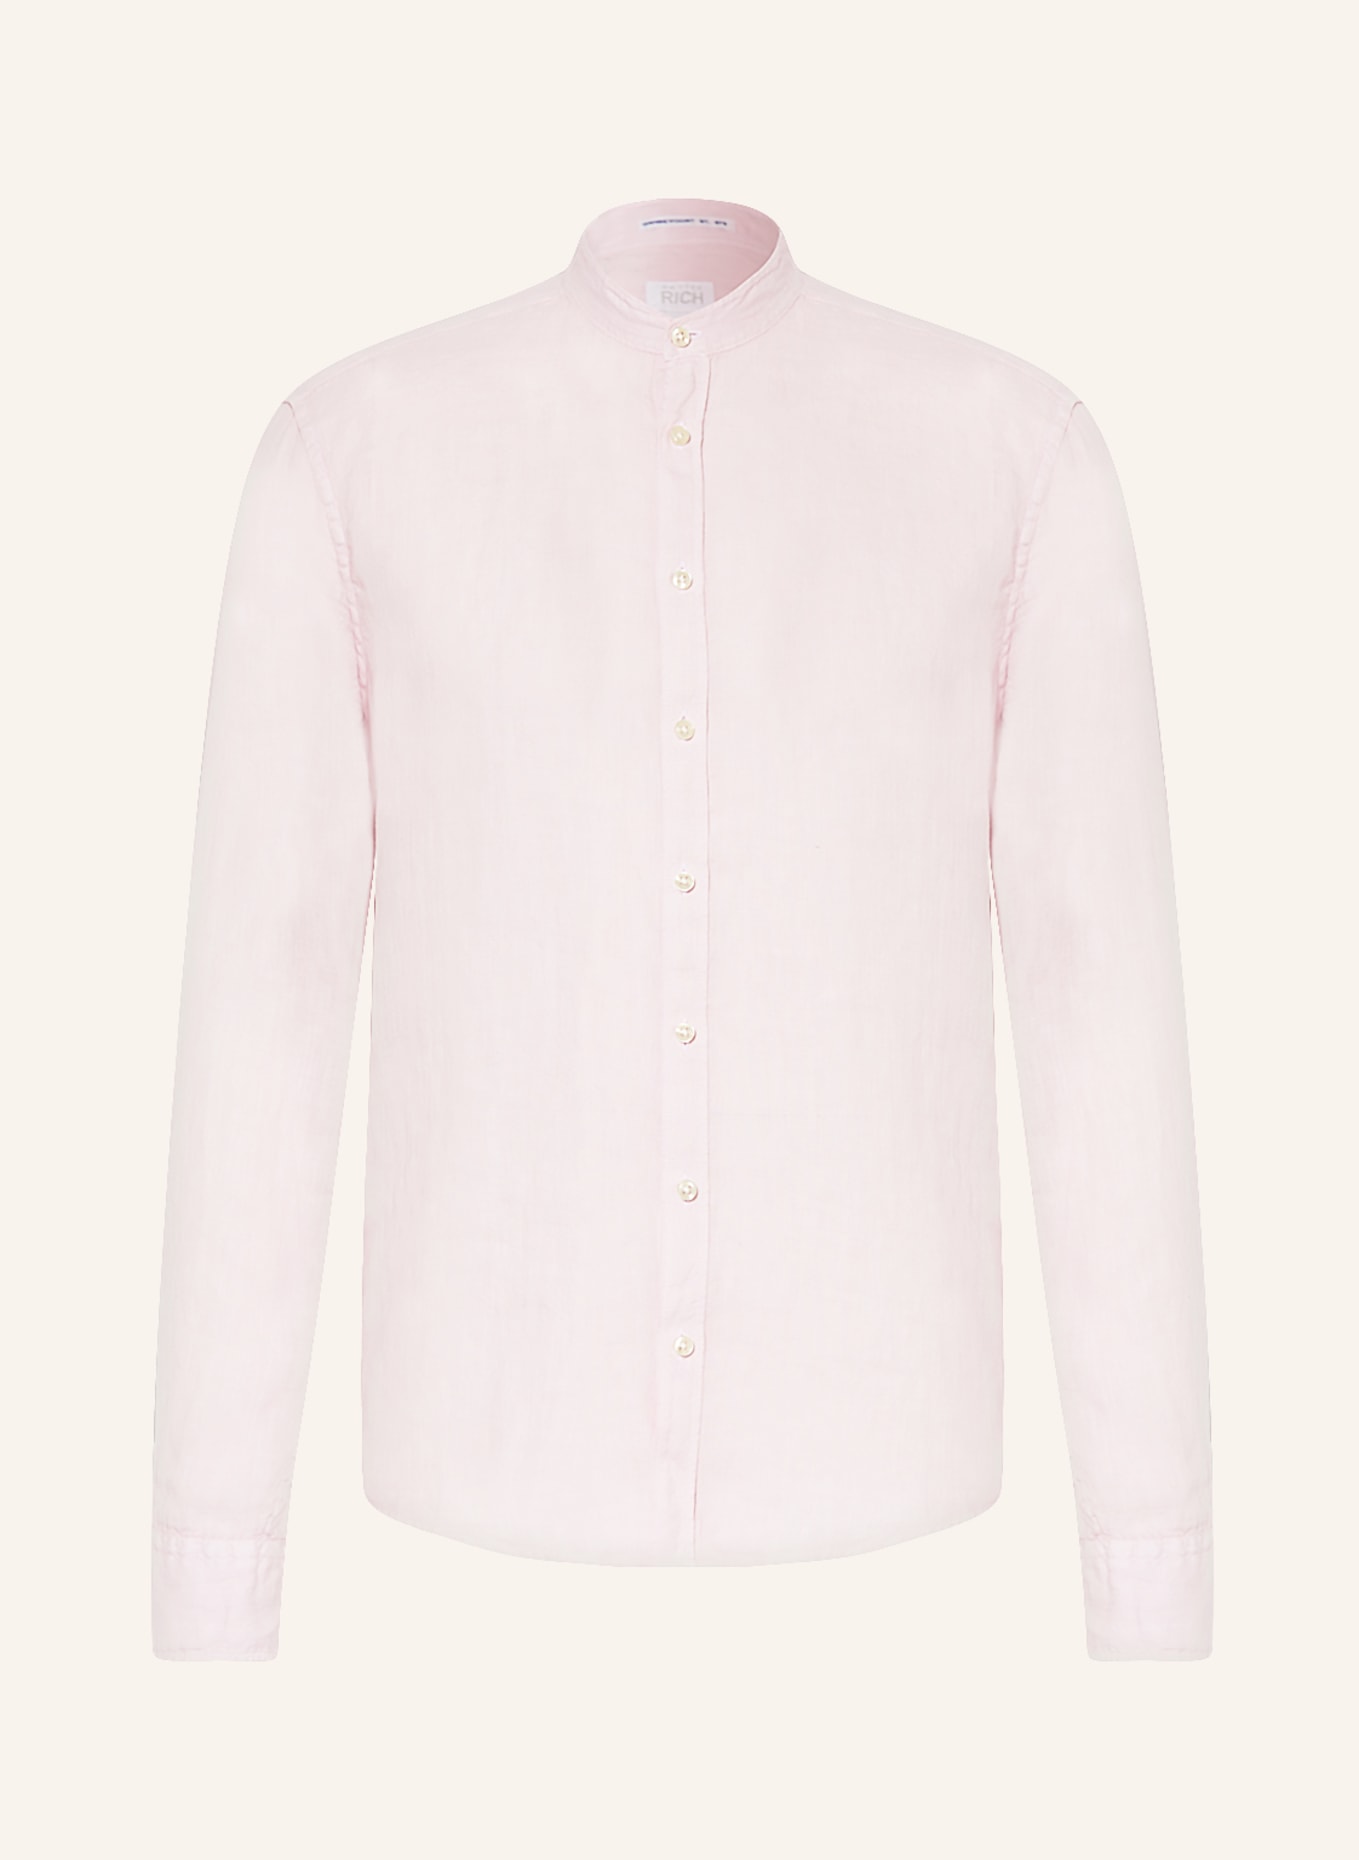 BETTER RICH Leinenhemd Regular Fit mit Stehkragen, Farbe: ROSA (Bild 1)